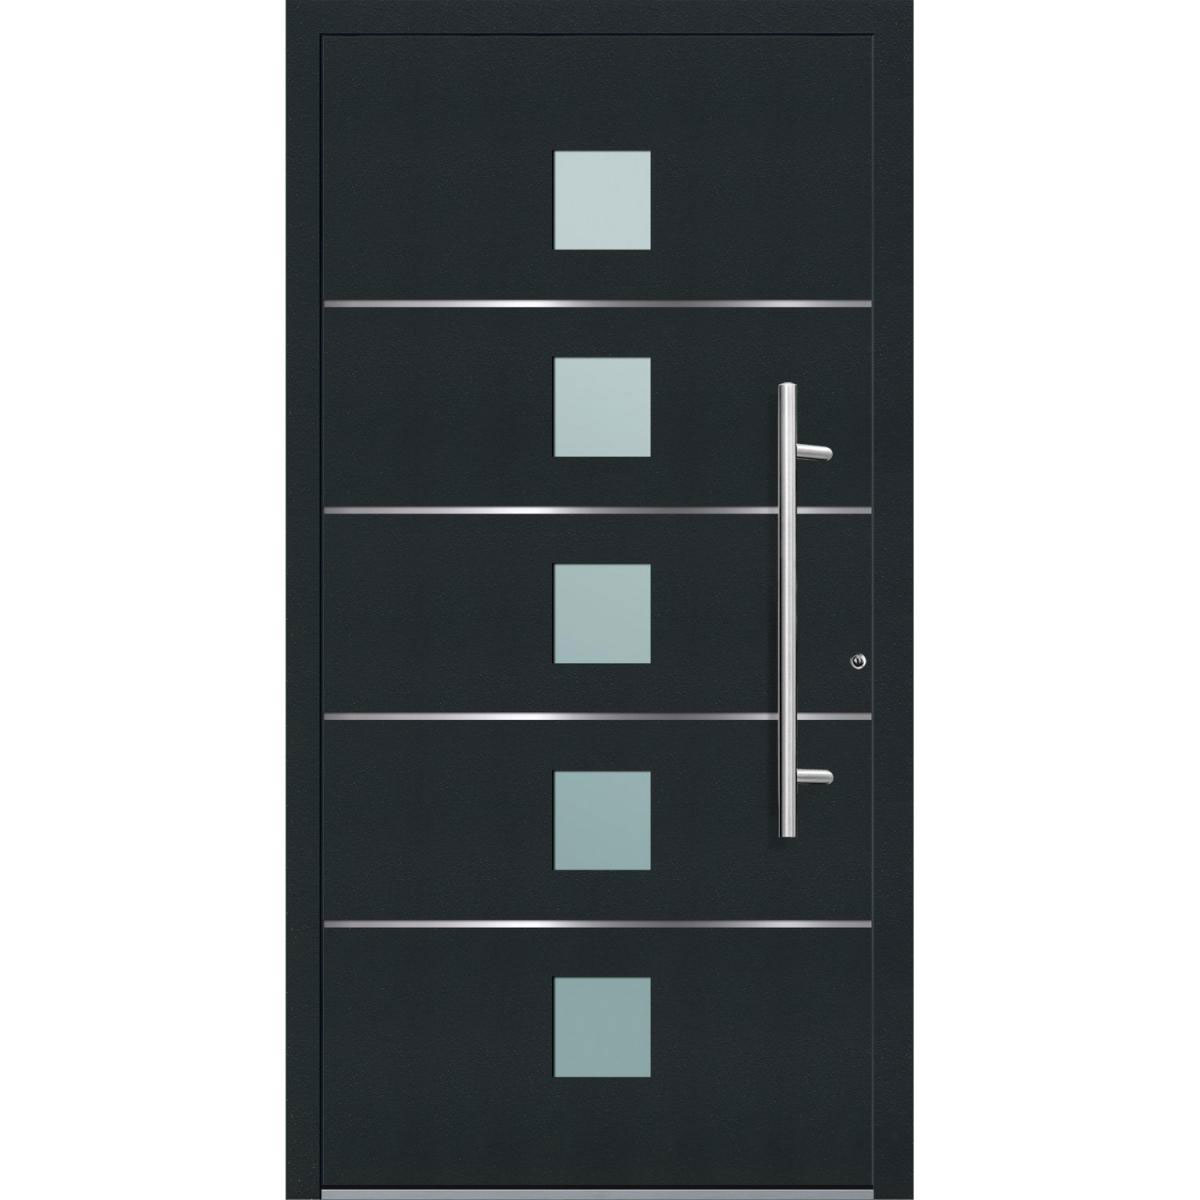 Aluminium Sicherheits-Haustür „Triest Exklusiv“, 75mm, anthrazit, 110x210 cm, Anschlag rechts, inkl. Griffset